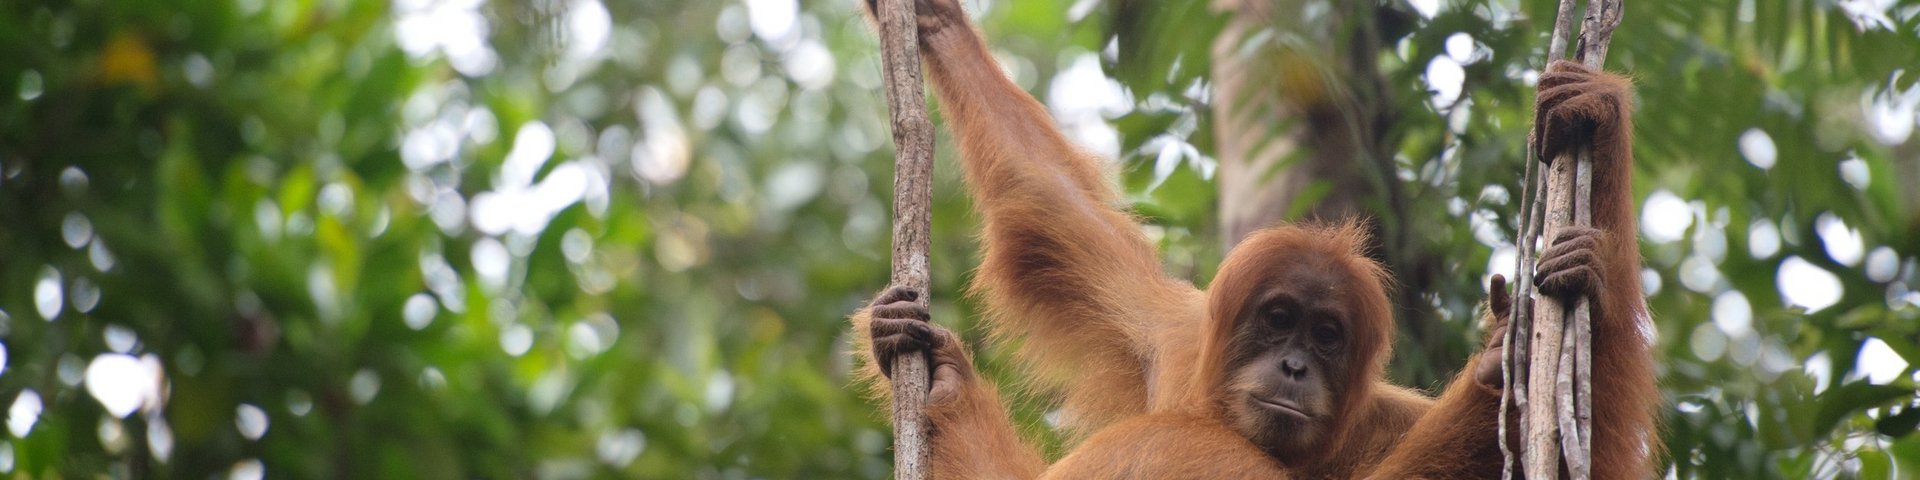 Sumatranischer Orang-Utan